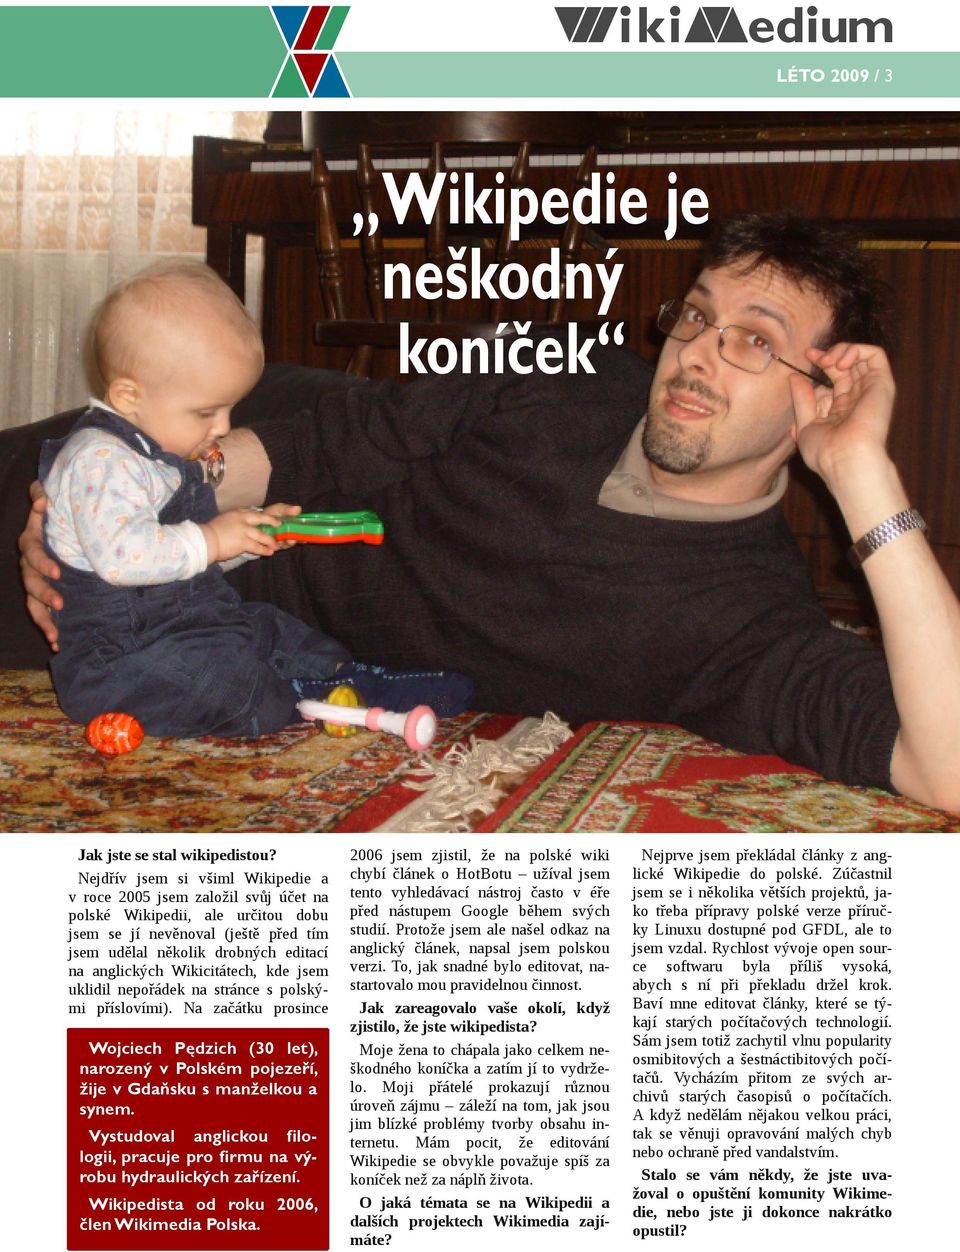 Wikicitátech, kde jsem uklidil nepořádek na stránce s polskými příslovími). Na začátku prosince Wojciech Pędzich (30 let), narozený v Polském pojezeří, žije v Gdaňsku s manželkou a synem.